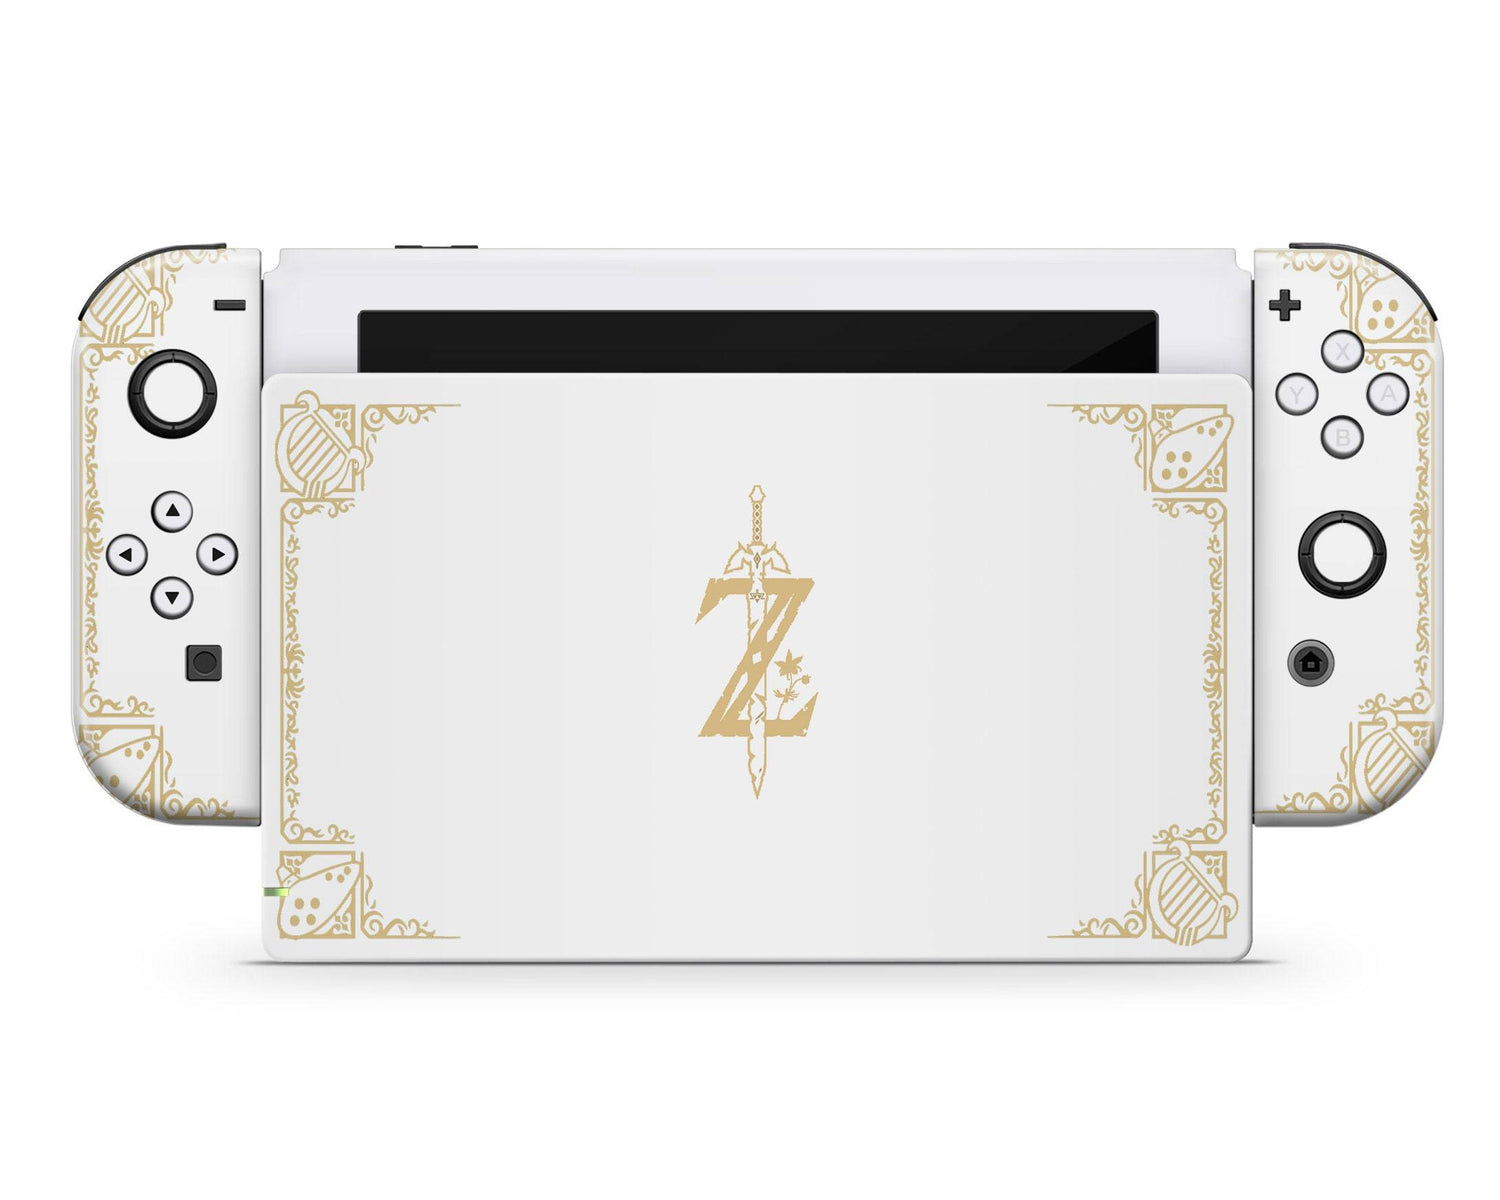 Lux Skins Nintendo Switch Legend of Zelda White Gold Full Set Skins - Pop culture Zelda Skin